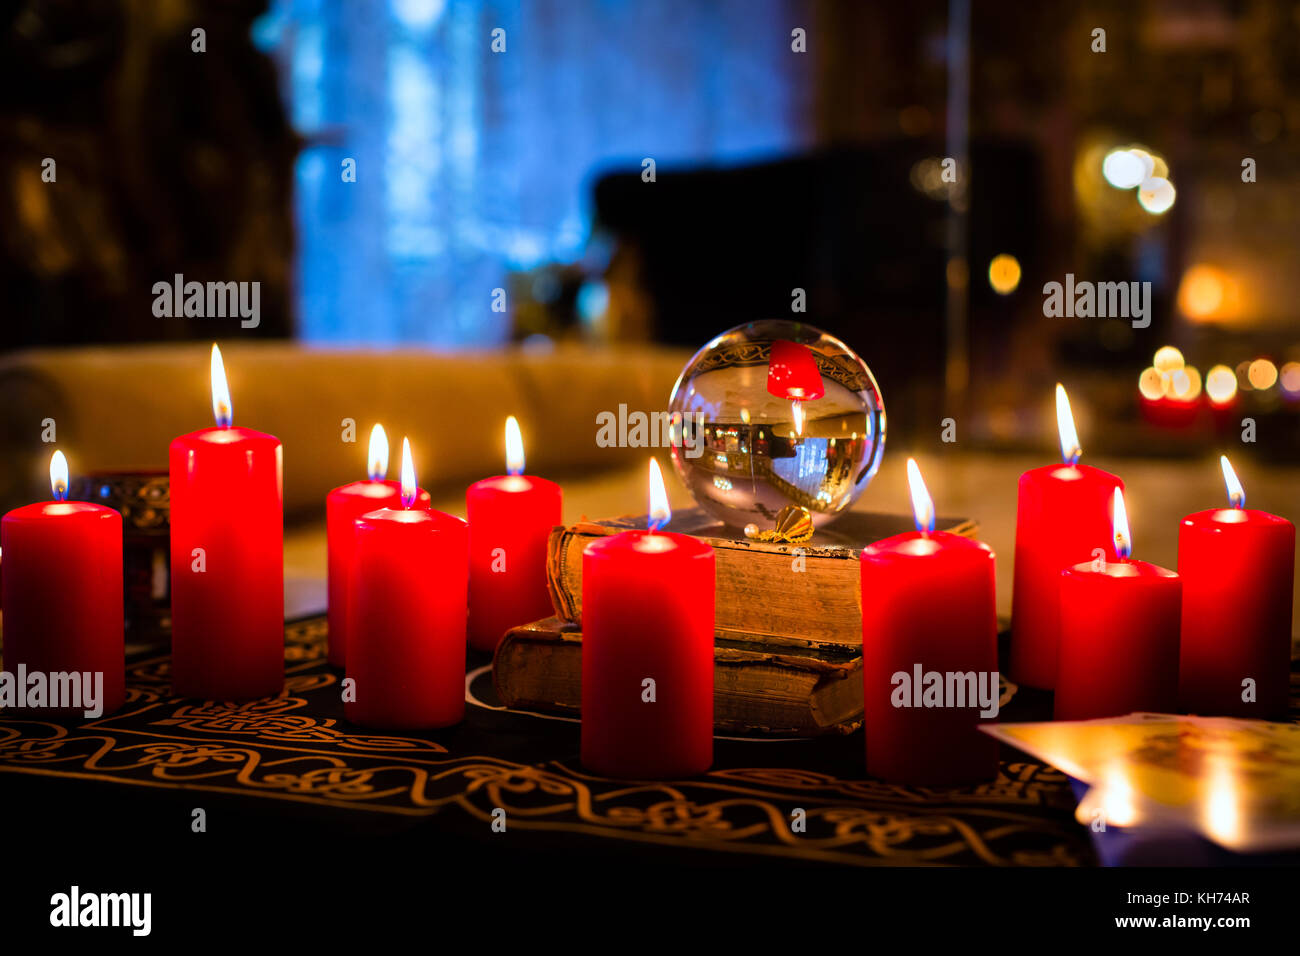 seance candles gww